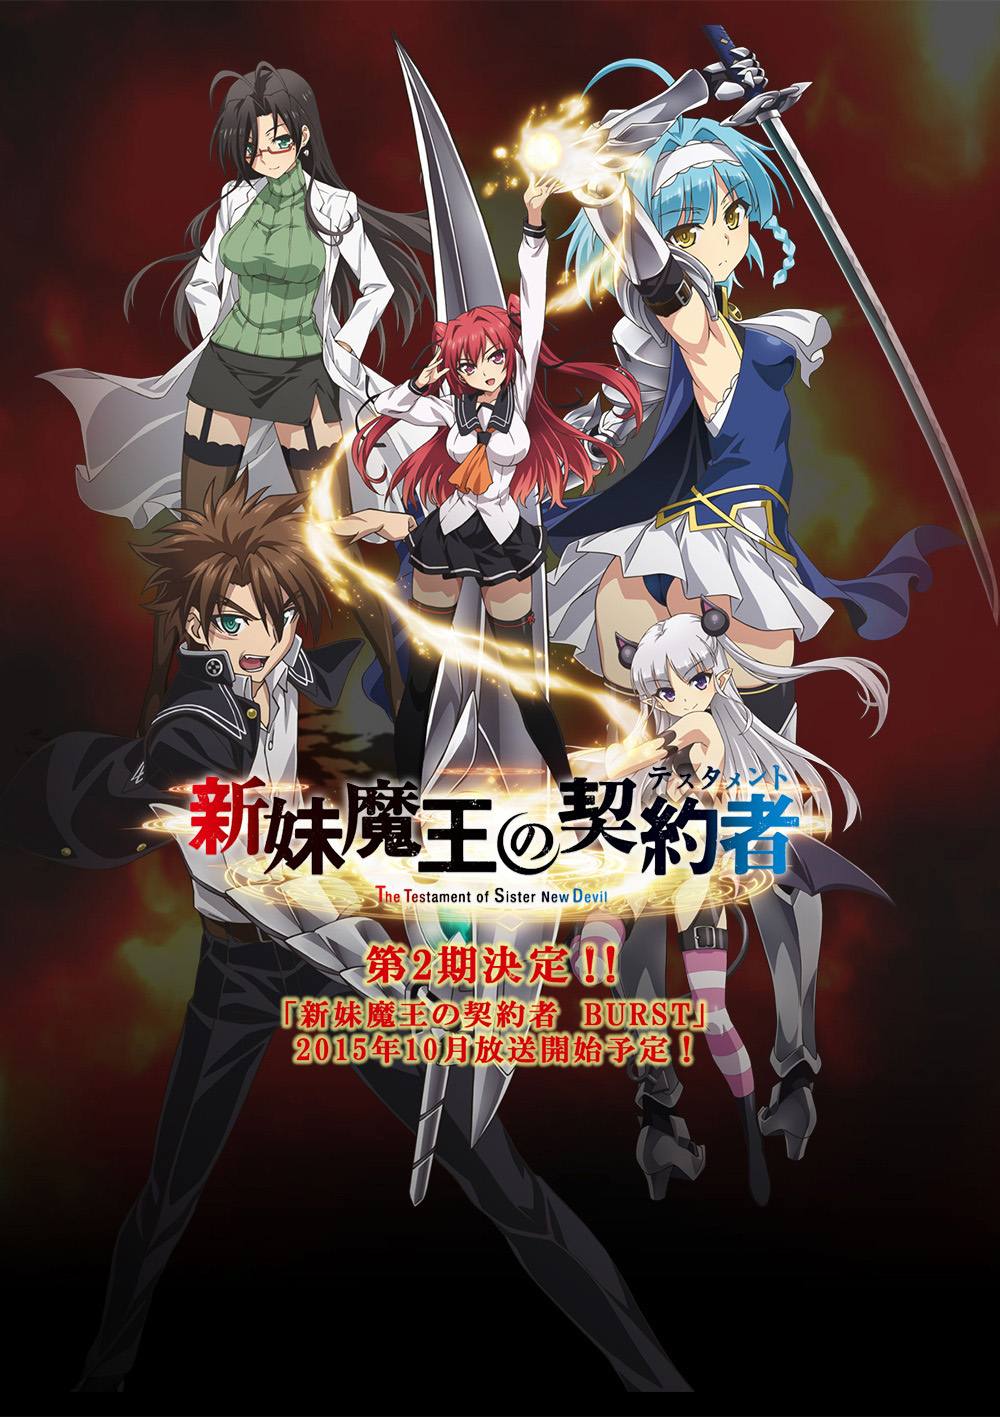 Kore wa Zombie Desu Ka? 10th Light Novel to Include Unaired